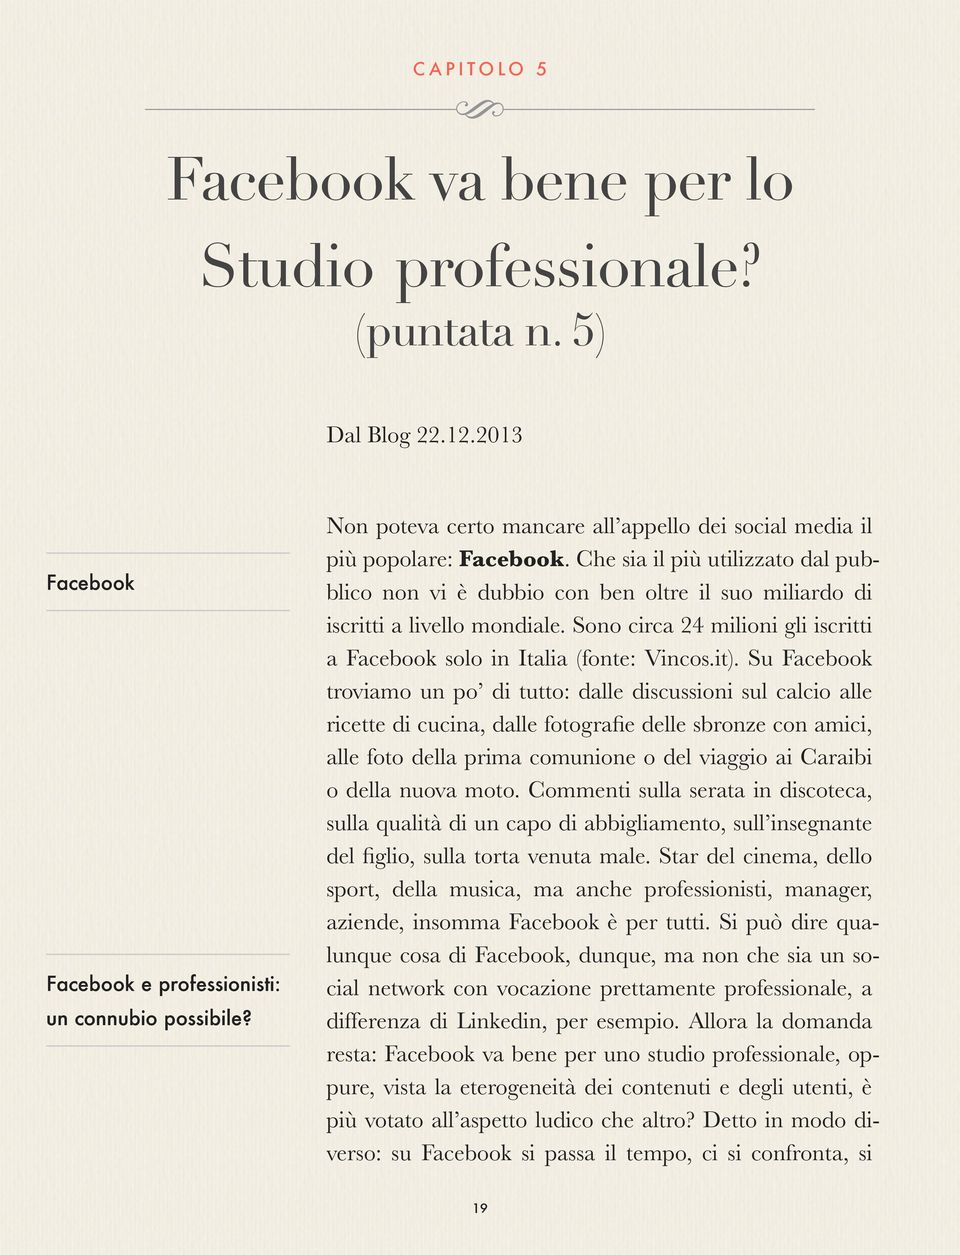 Sono circa 24 milioni gli iscritti a Facebook solo in Italia (fonte: Vincos.it).